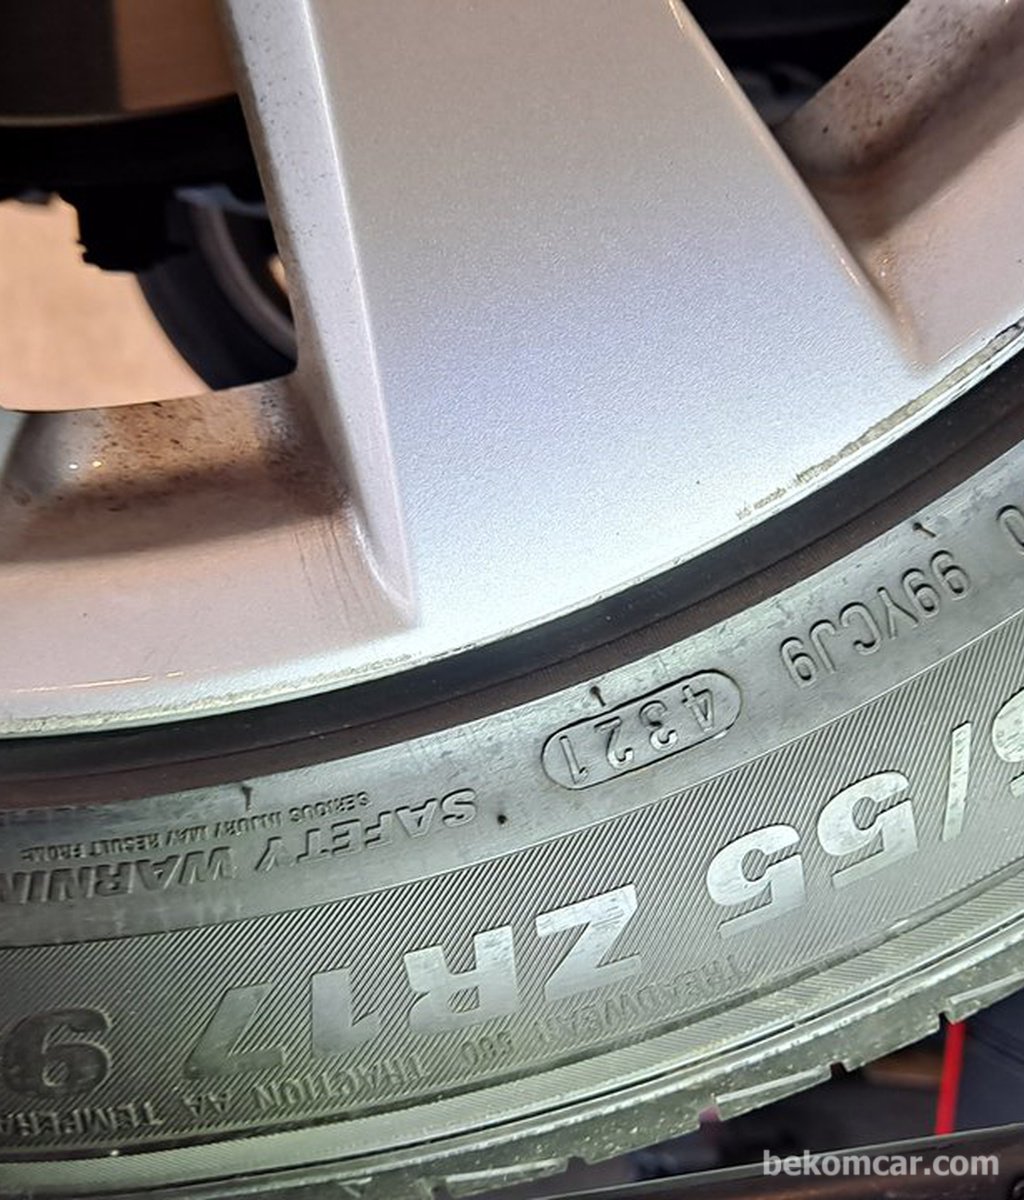 중고차구매 점검에 타이어 상태는 꼭 파악하여 정비비에 포함한다.|بيكومكار  (bekomcar)